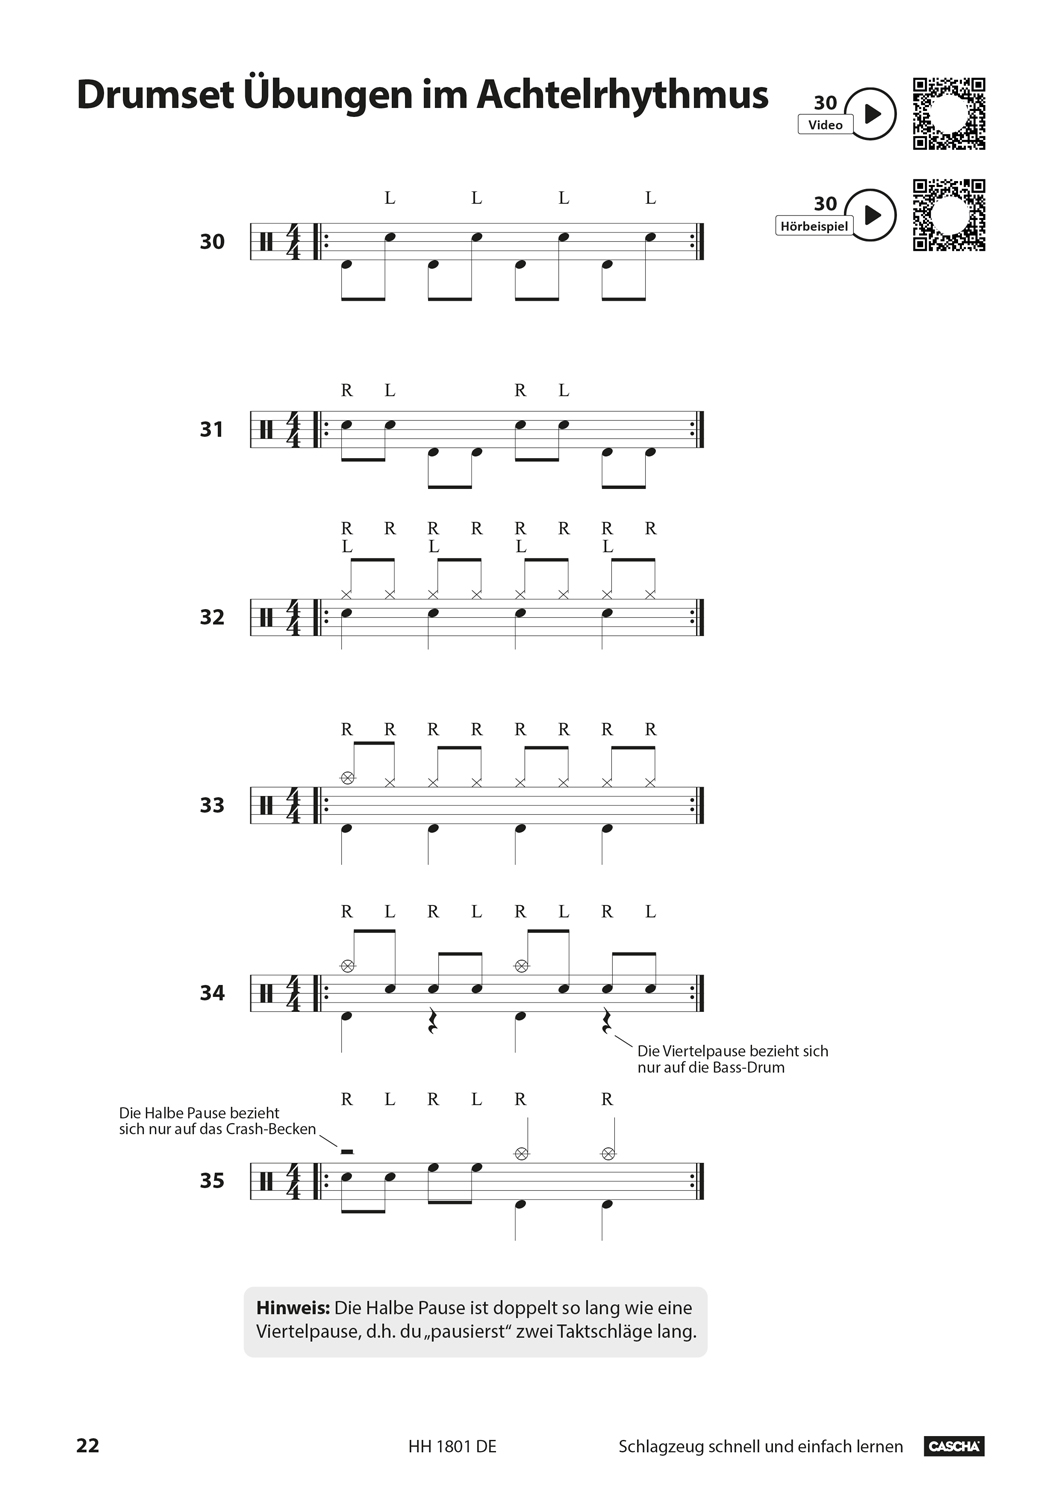 Schlagzeug - Schnell und einfach lernen Seiten 7